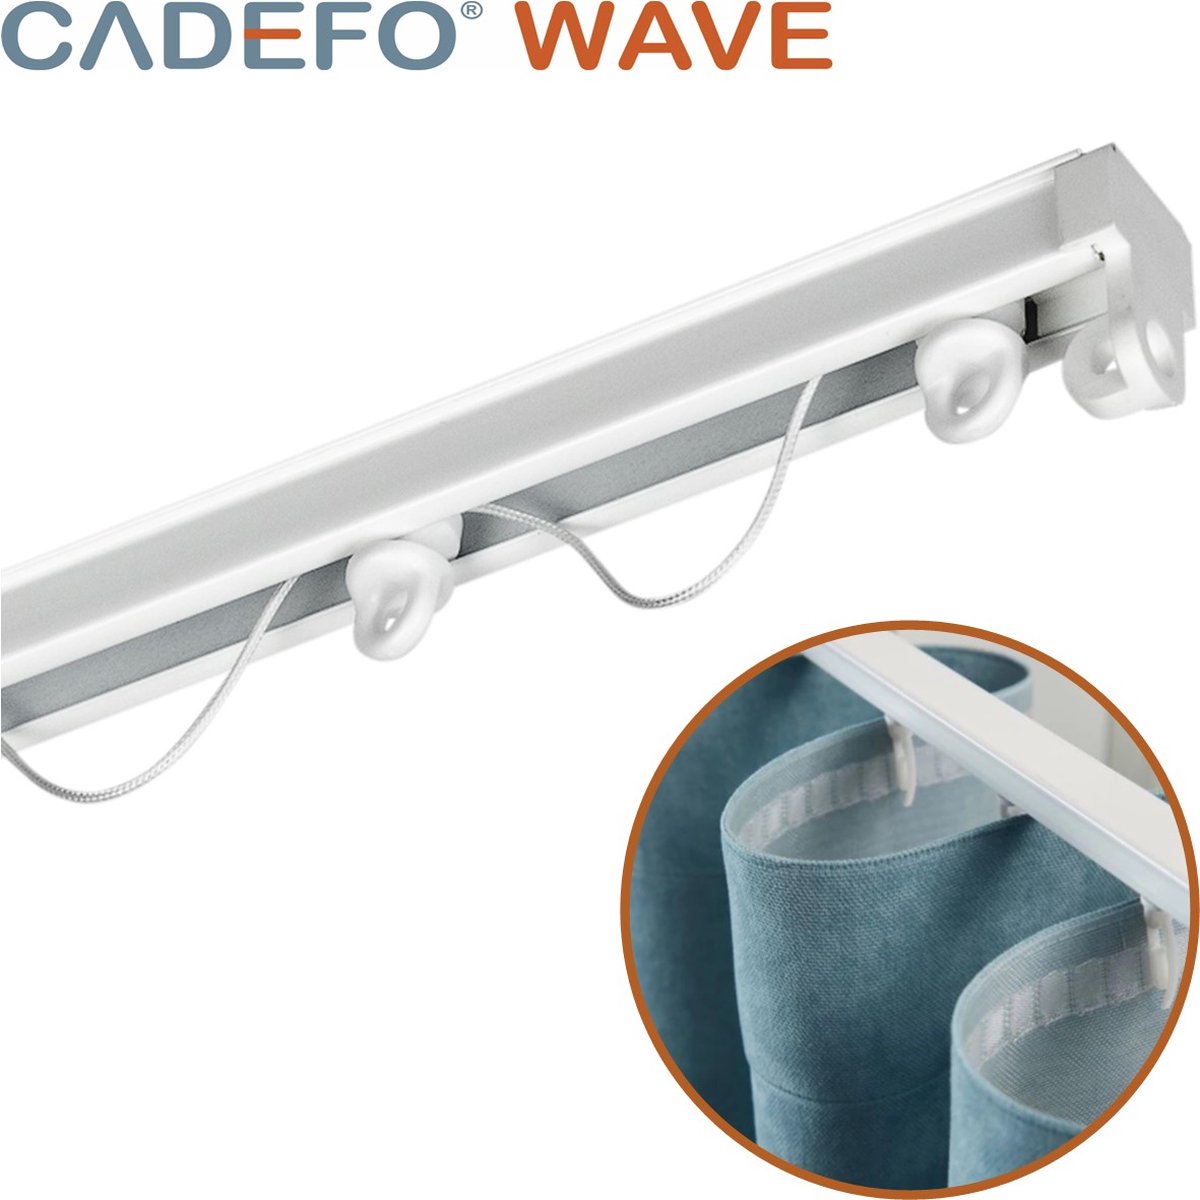 CADEFO WAVE (501 - 550 cm) Gordijnrails - Compleet op maat! - UIT 1 STUK - Leverbaar tot 6 meter - Plafondbevestiging - Lengte 526 cm